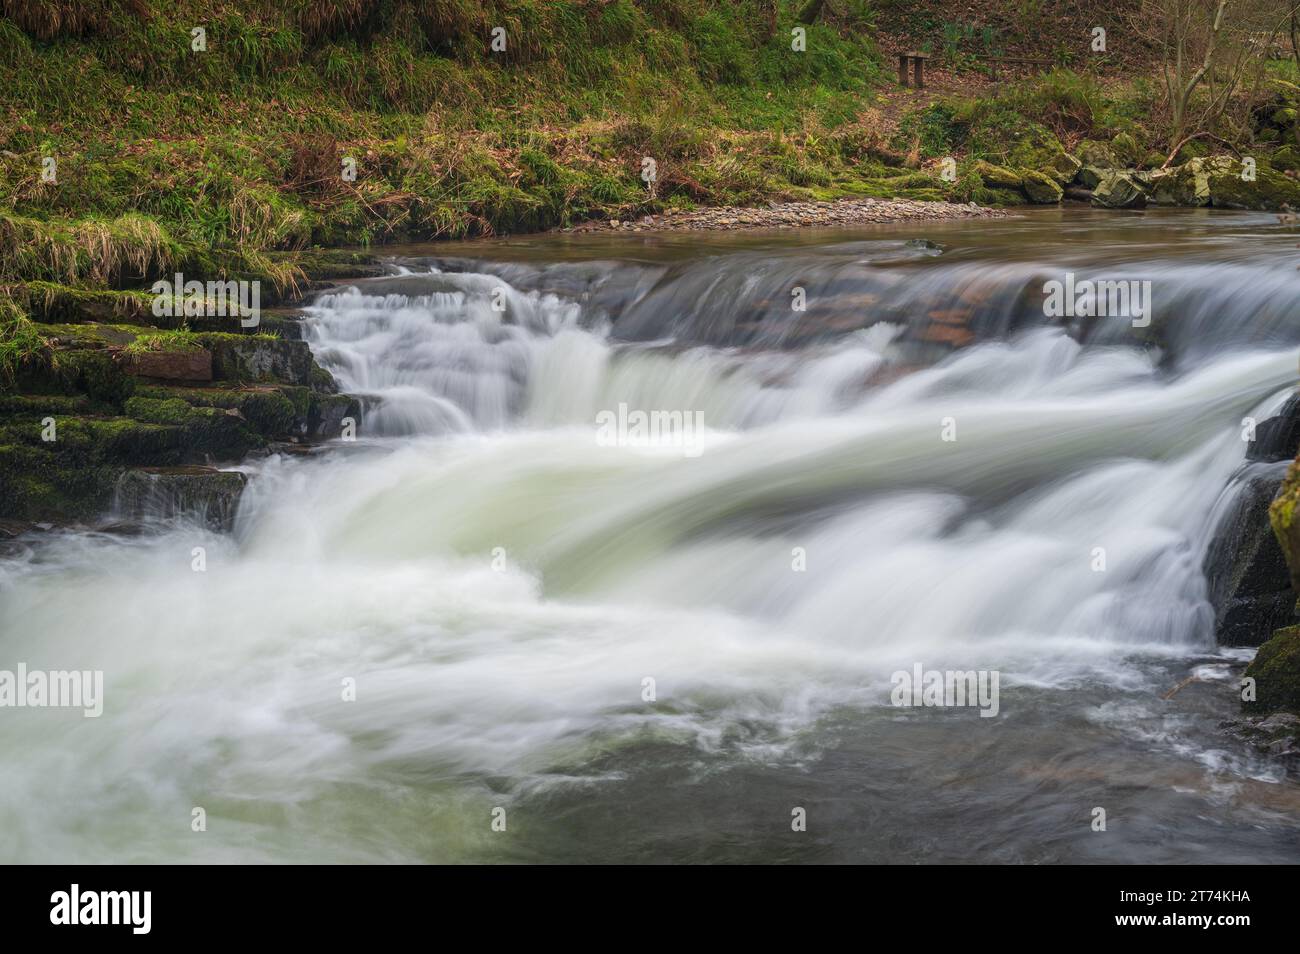 Eau qui coule rapidement sur les rivières à National Trusts Watersmeet à North Devon, Devon, Angleterre, Royaume-Uni. Partie du parc national Exmoor. Banque D'Images